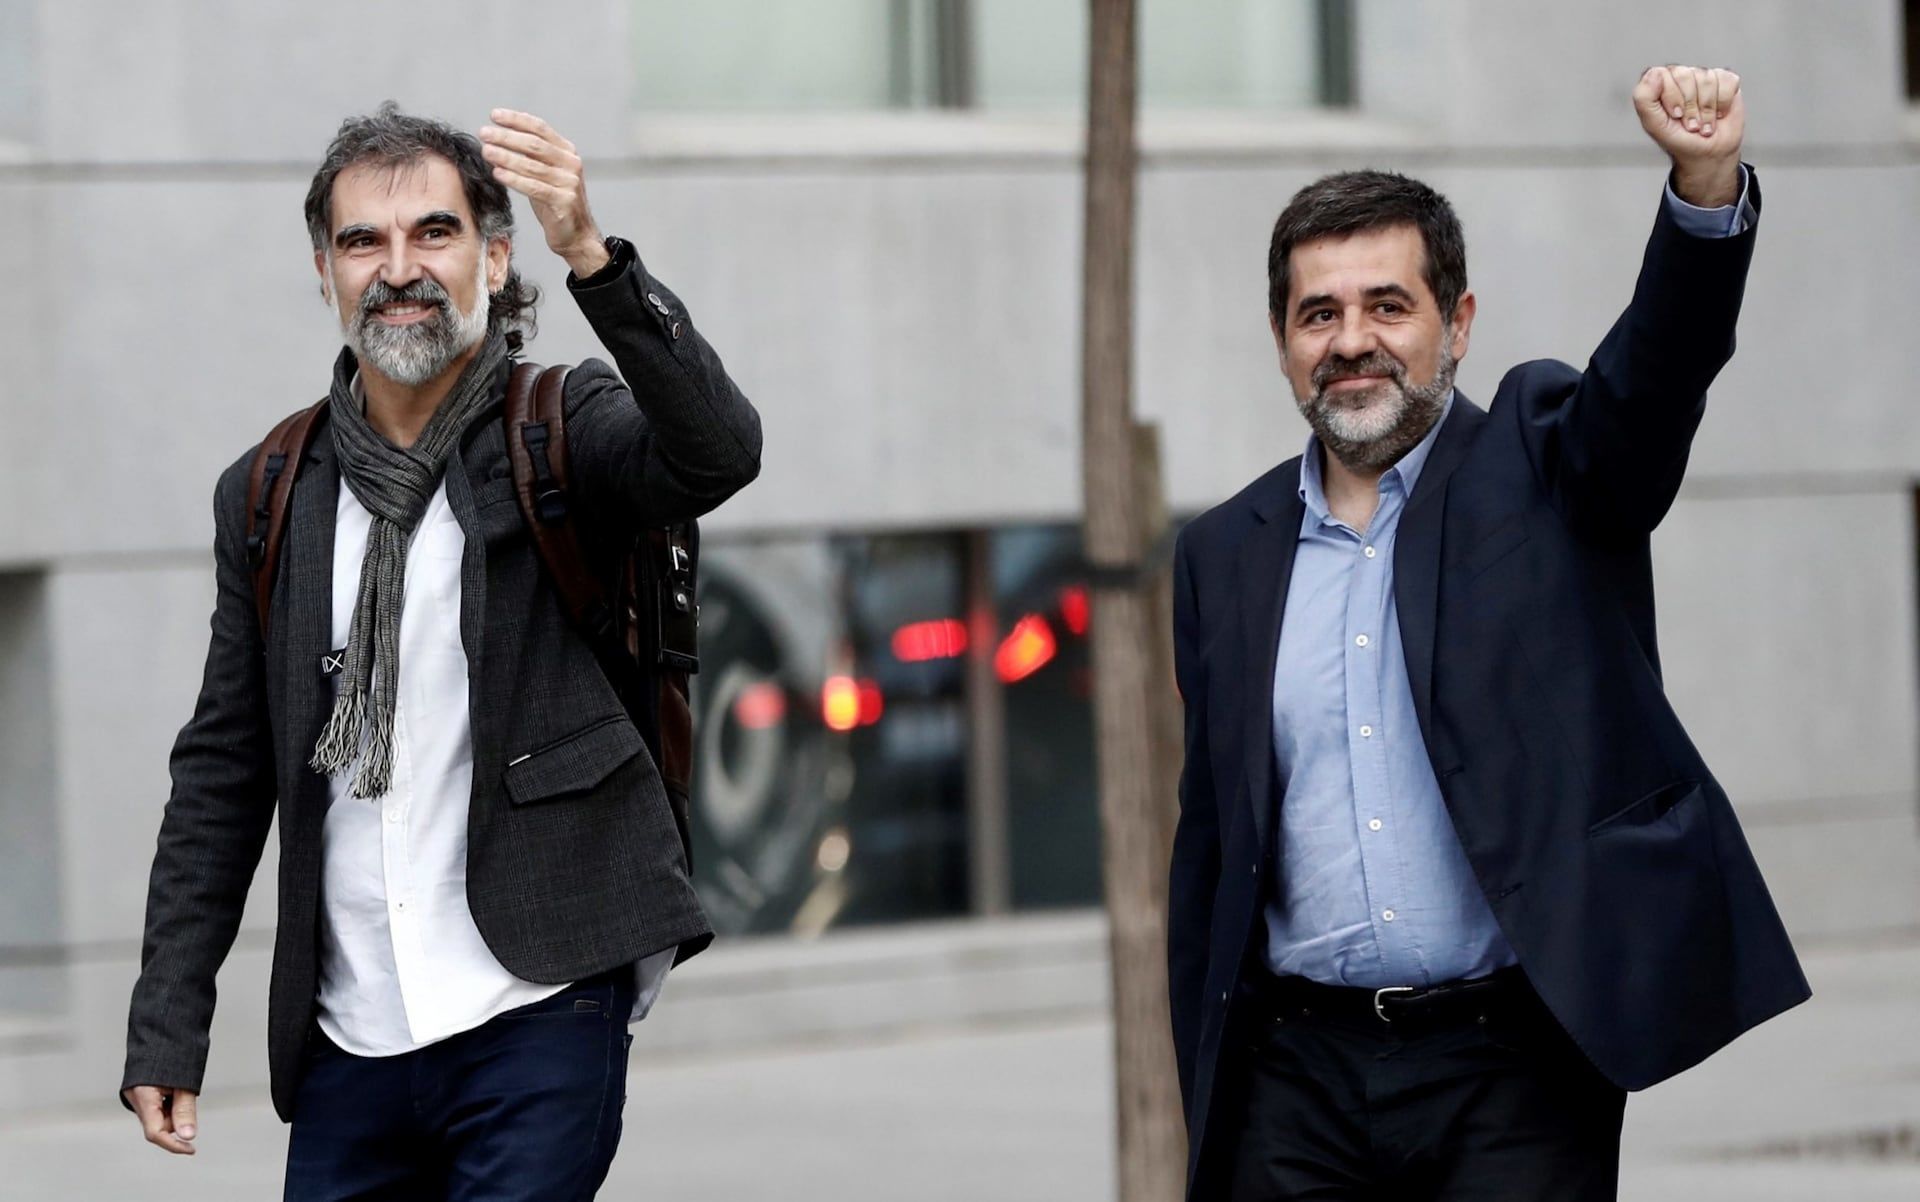 حکم بازداشت دو نفر از رهبران جدایی طلب توسط دادگاه اسپانیا صادر شد